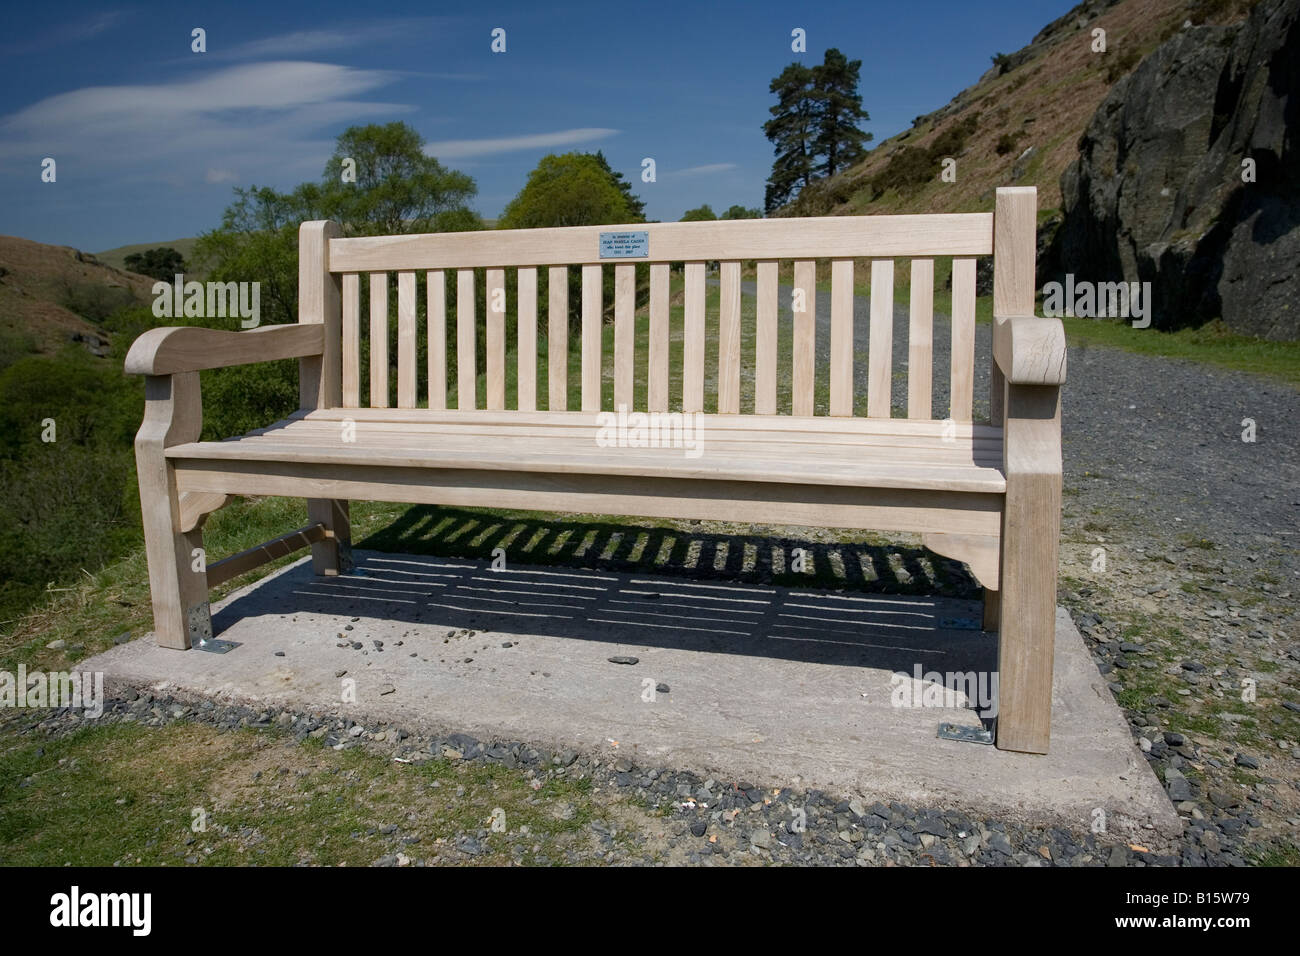 Nouveau siège memorial chêne Elan Valley Mid Wales UK Banque D'Images